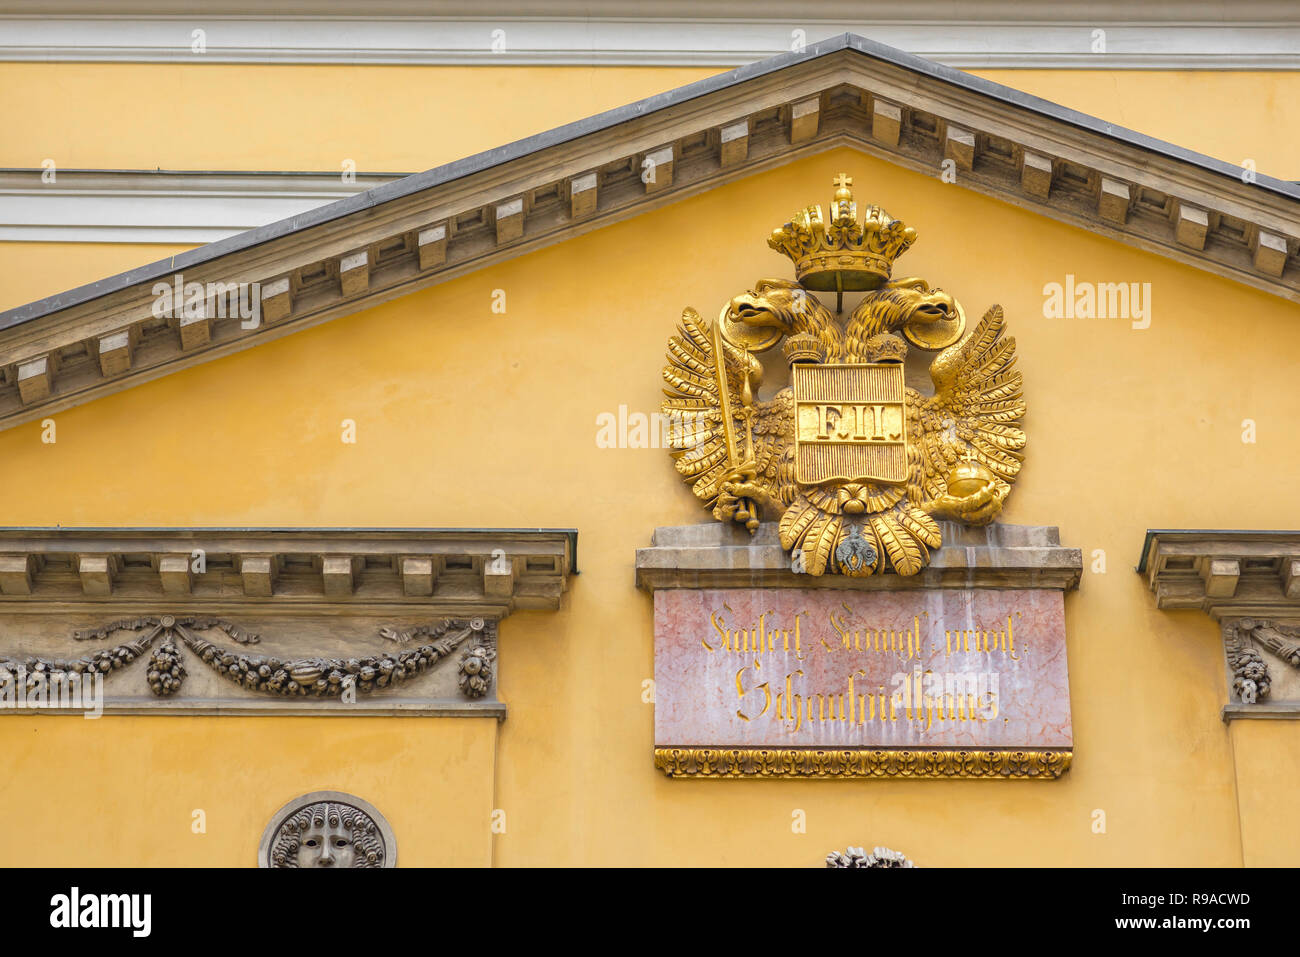 Habsburger Wappen Wien, Ansicht der kaiserlichen Wappen über dem Papageno Tor des Theater an der Wien - Wiener original Opera House. Stockfoto